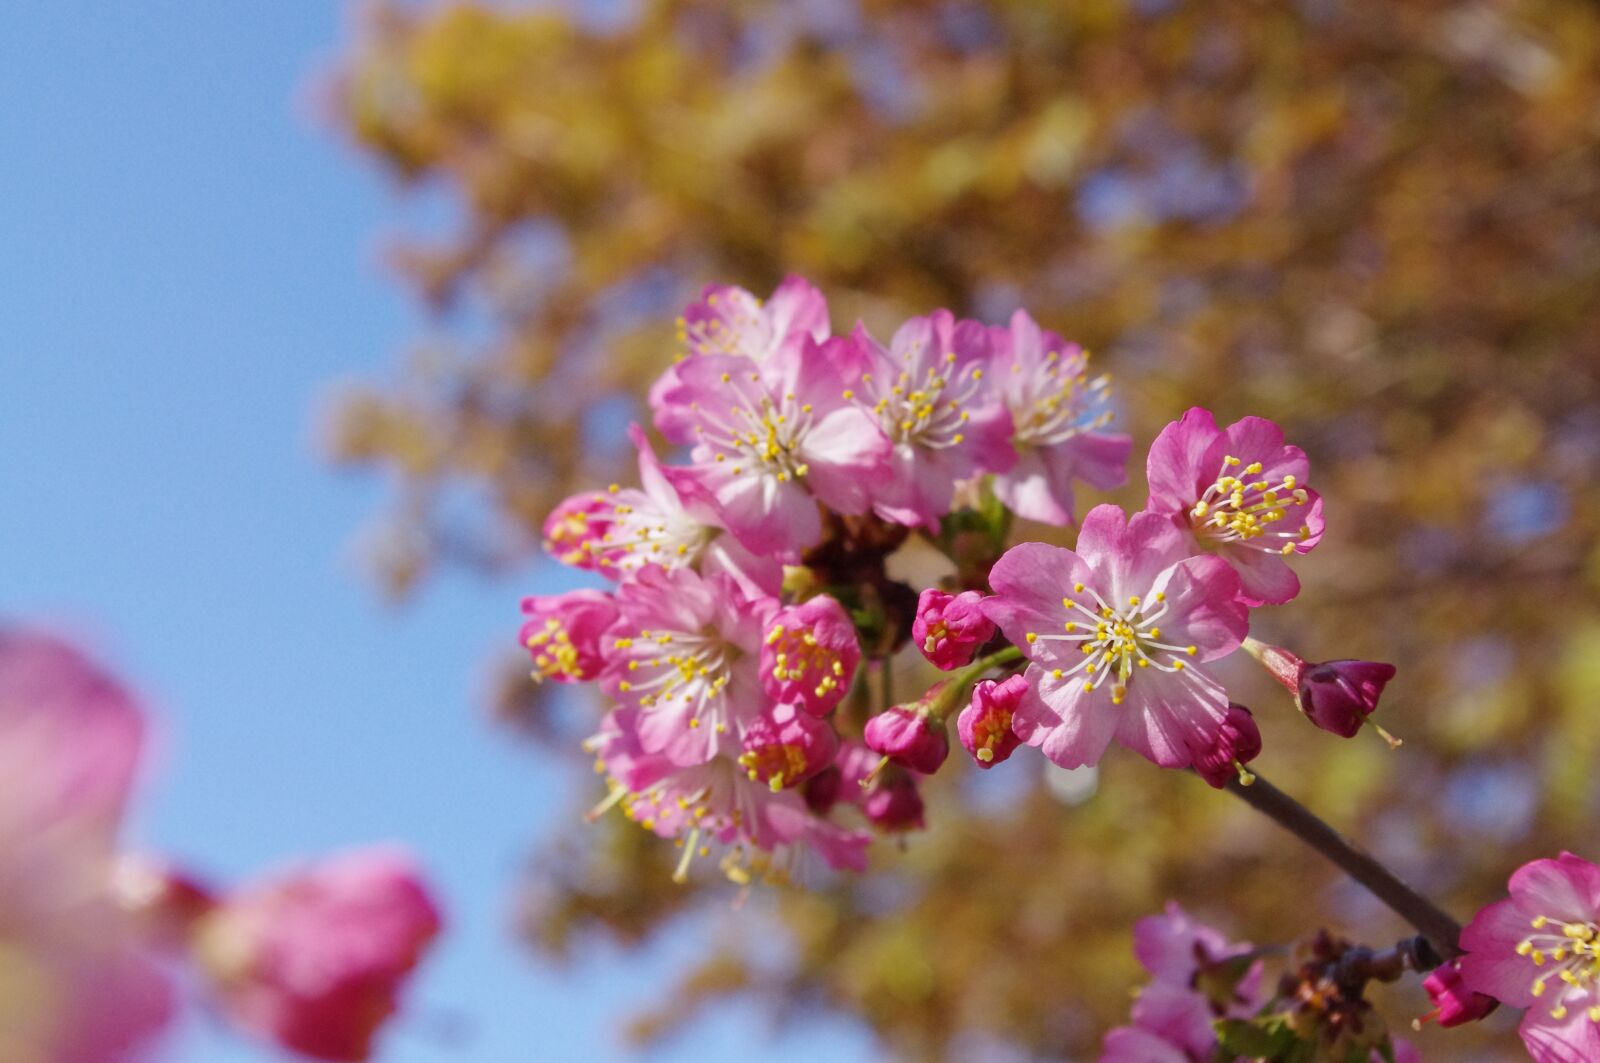 Pentax K-r sample photo. Sakura, flower, spring photography